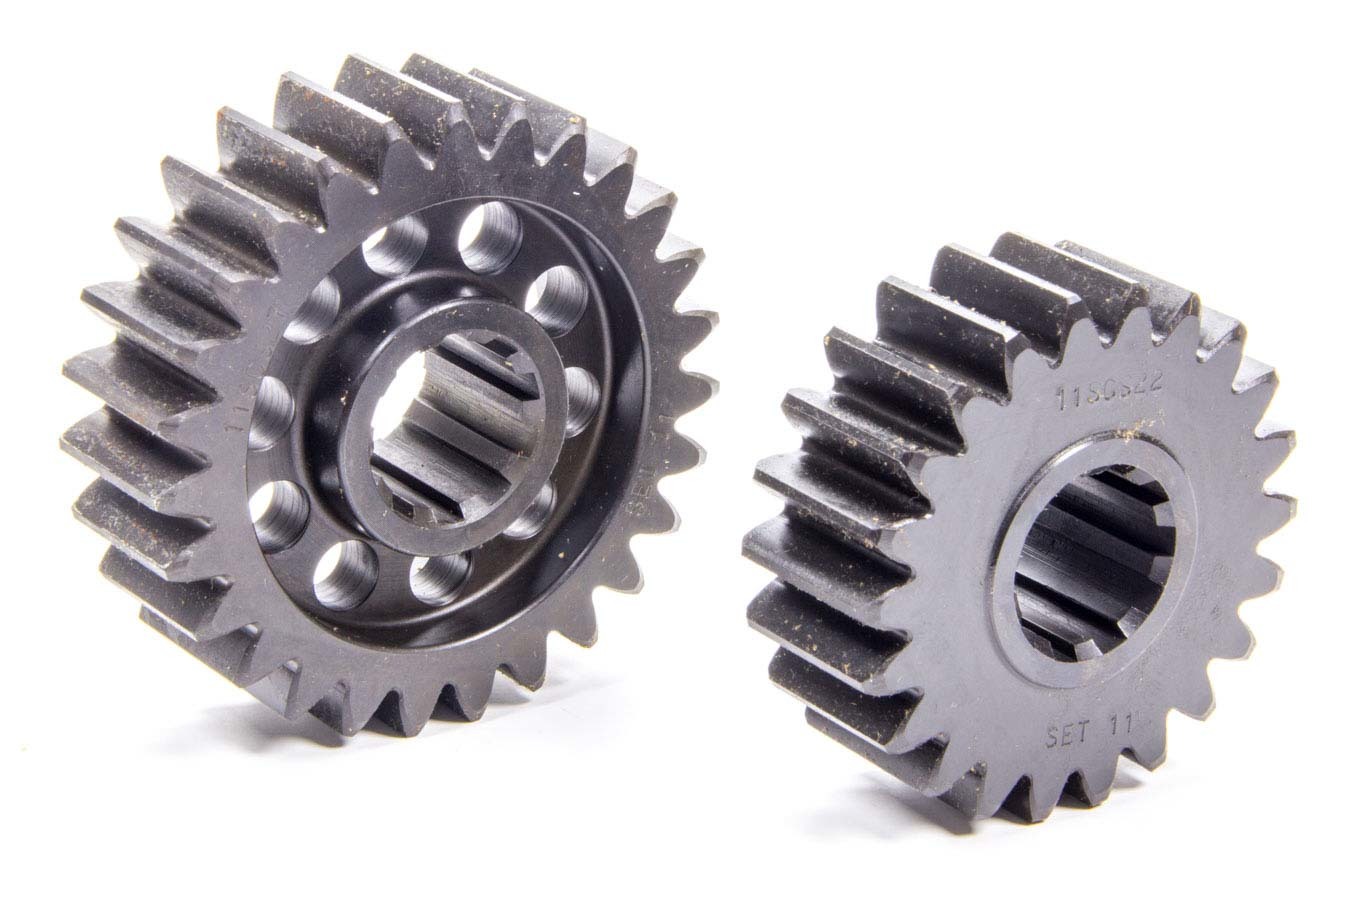 SCS Gears 11 Quick Change Gear Set, Professional, Set 11, 10 Spline, 4.11 Ratio 5.04 / 3.35, 4.86 Ratio 5.96 / 3.96, Steel, Each